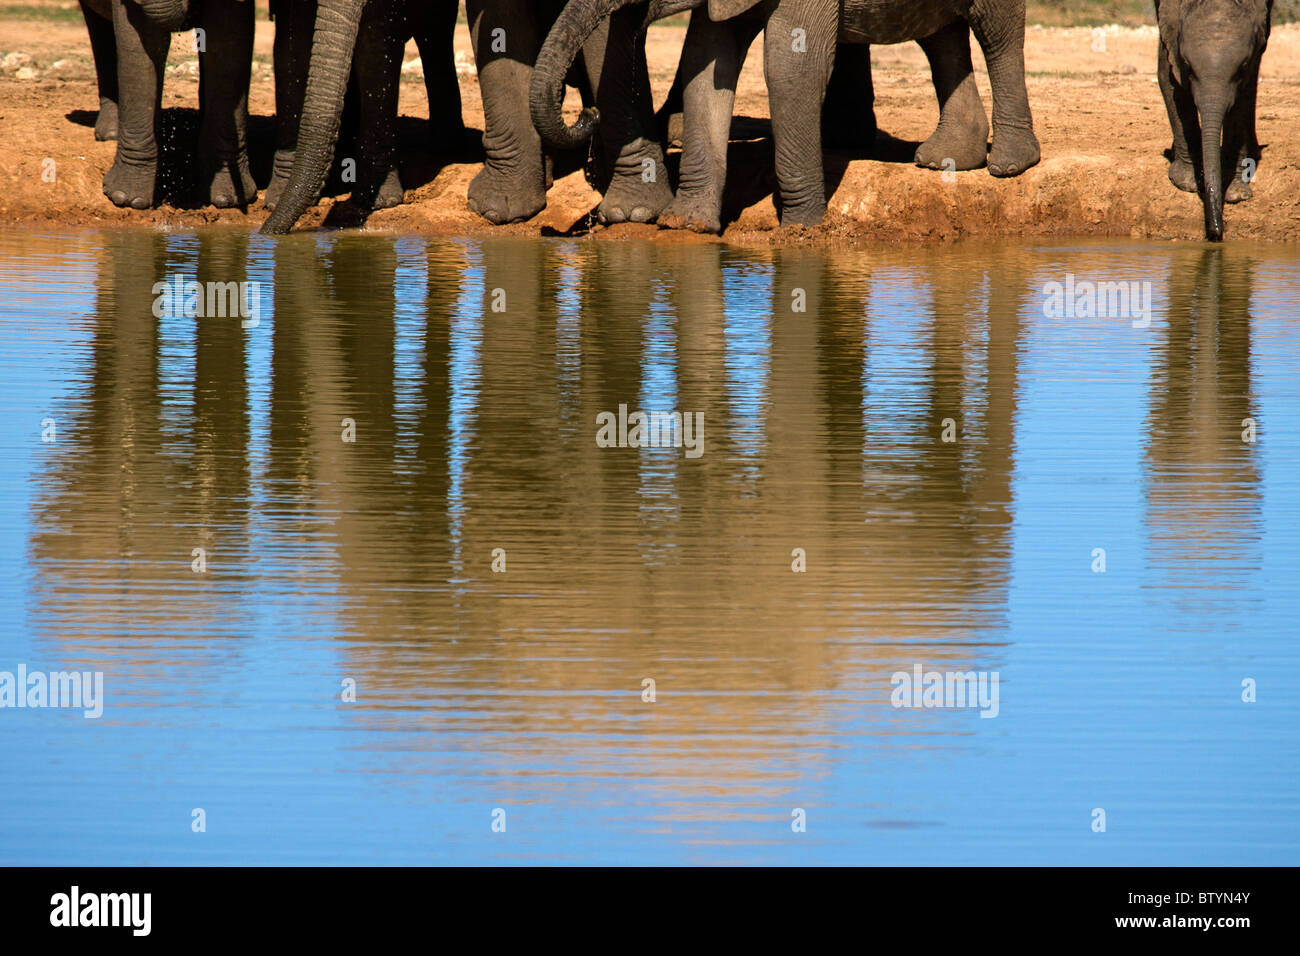 Une soif de la famille éléphant boire de l'eau fraîche dans une grande flaque d'eau. Le nouveau né à droite est de risquer d'aller dans l'eau... Banque D'Images